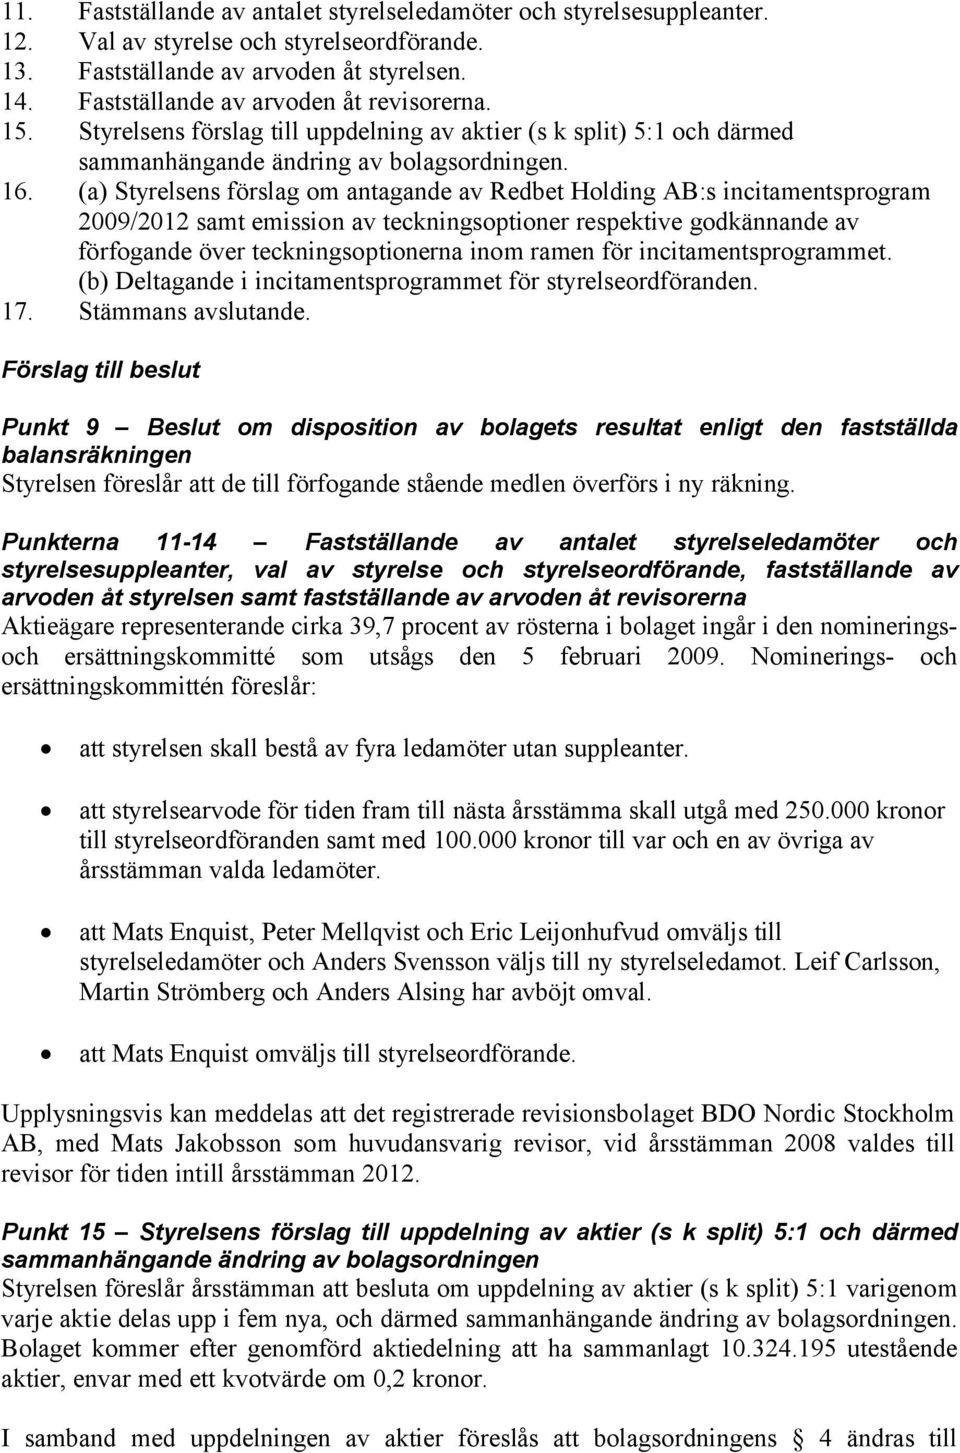 (a) Styrelsens förslag om antagande av Redbet Holding AB:s incitamentsprogram 2009/2012 samt emission av teckningsoptioner respektive godkännande av förfogande över teckningsoptionerna inom ramen för